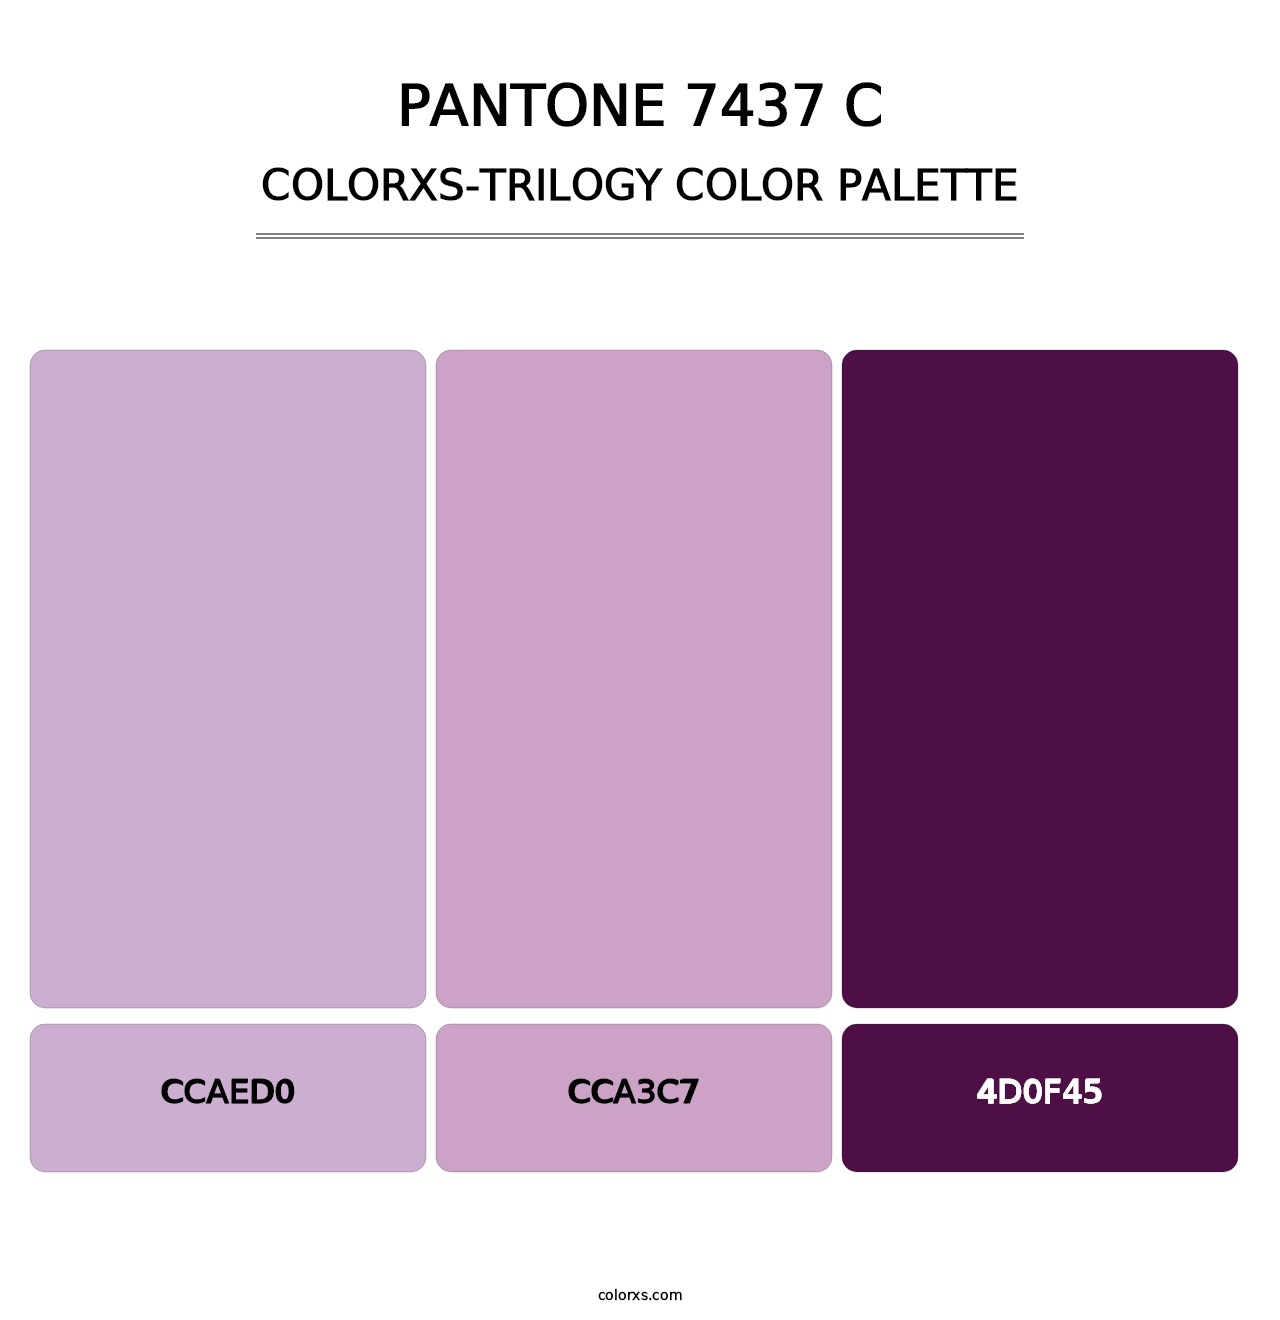 PANTONE 7437 C - Colorxs Trilogy Palette